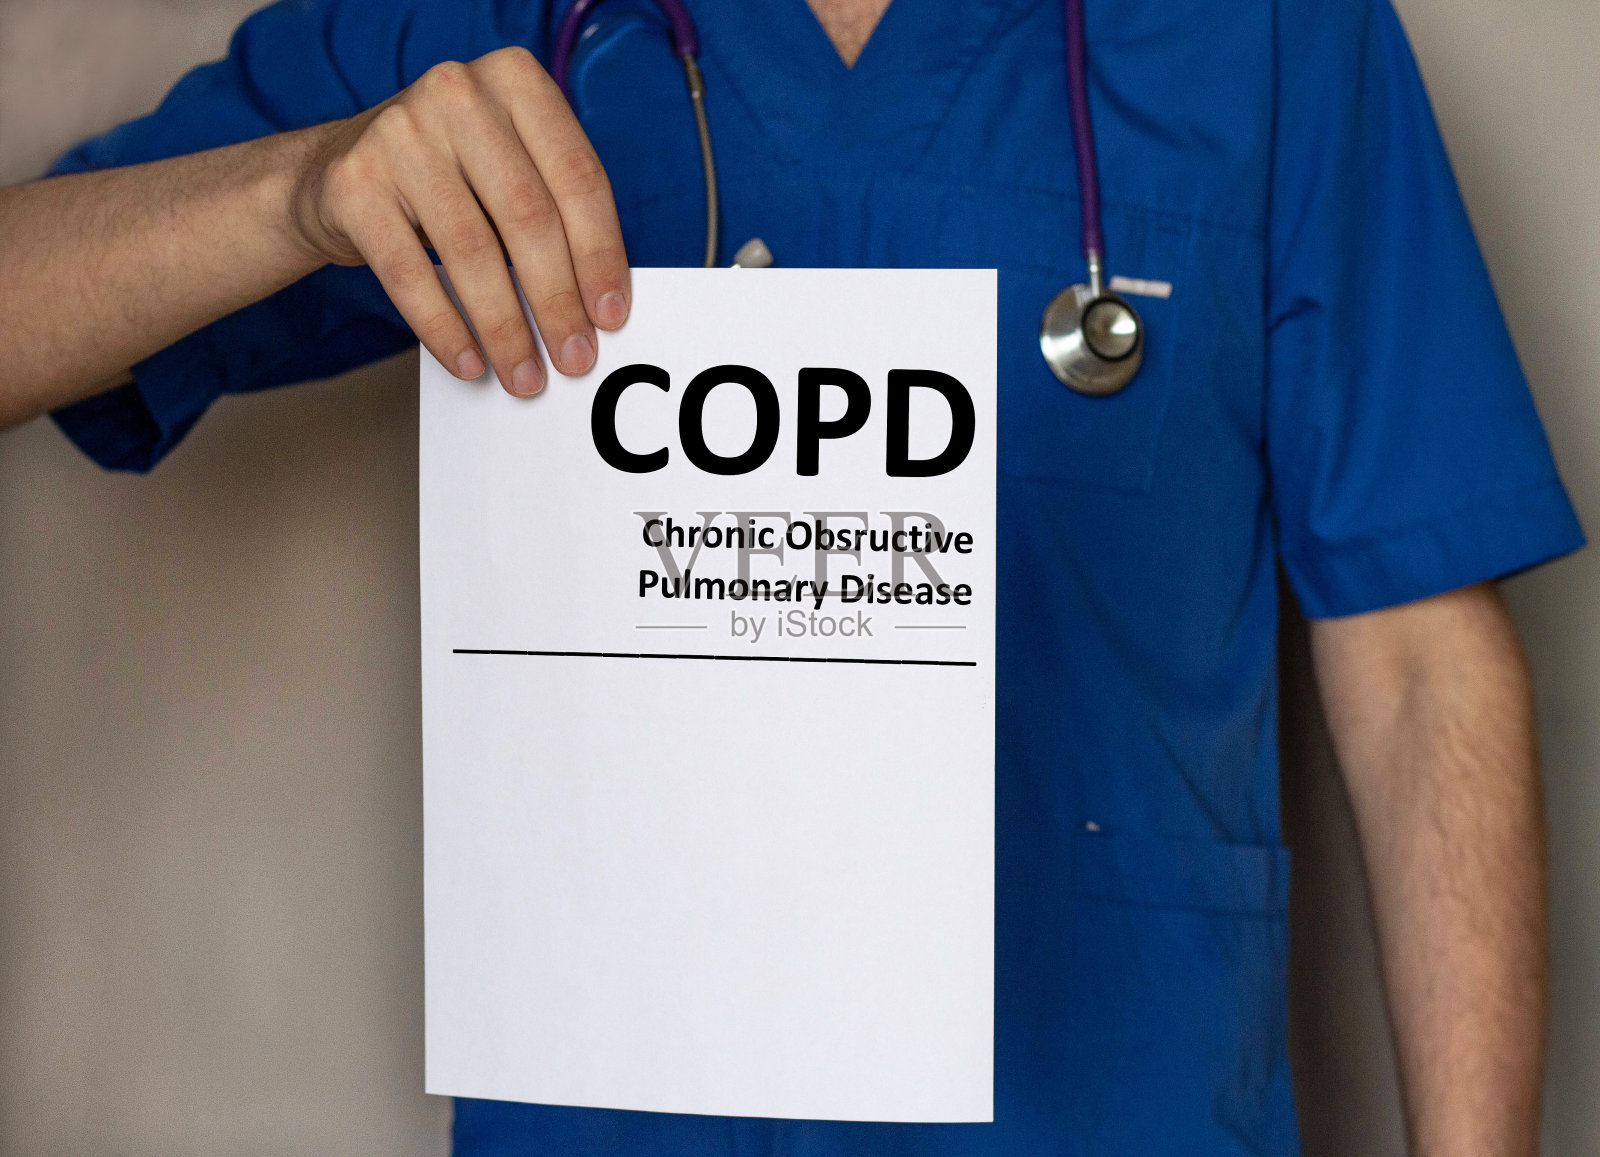 彩色便利贴上的首字母缩写是COPD(慢性阻塞性肺病)照片摄影图片